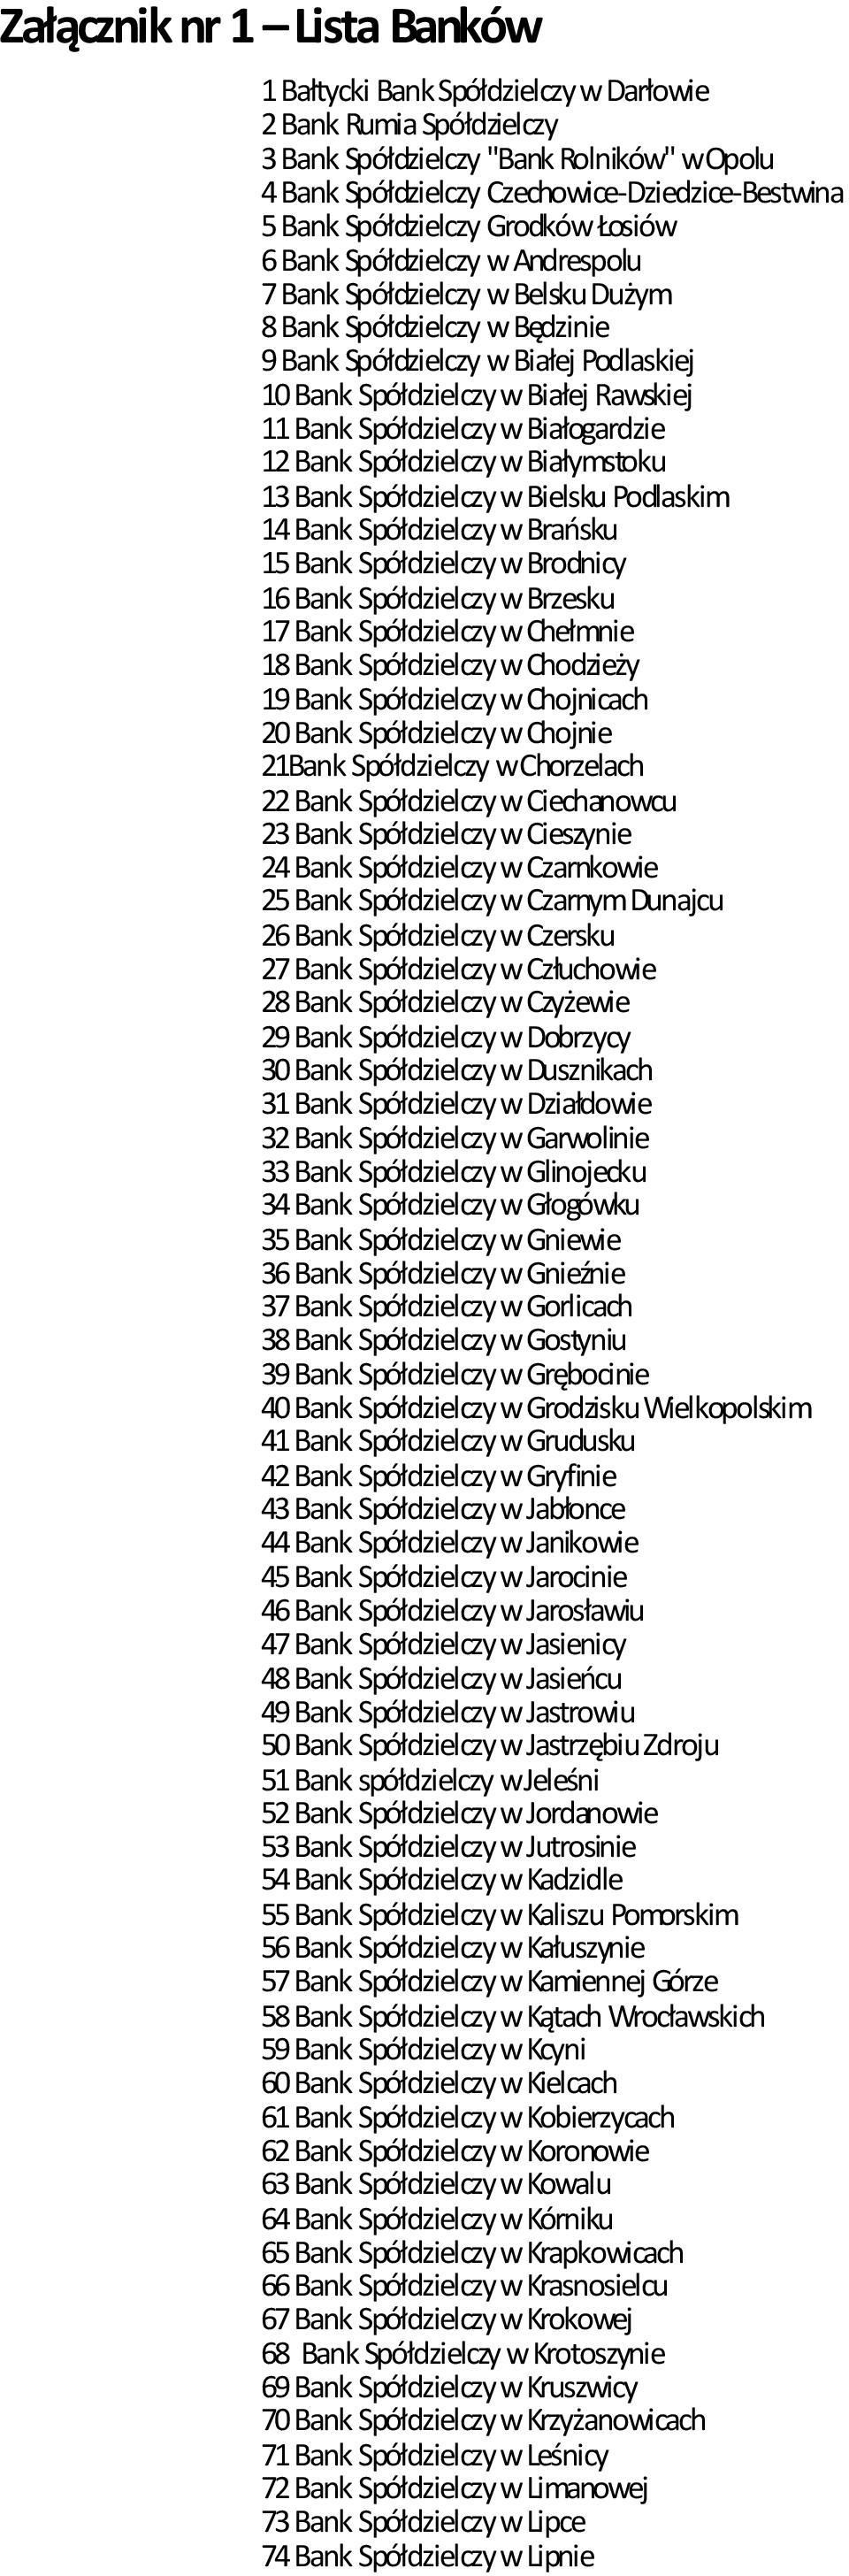 Rawskiej 11 Bank Spółdzielczy w Białogardzie 12 Bank Spółdzielczy w Białymstoku 13 Bank Spółdzielczy w Bielsku Podlaskim 14 Bank Spółdzielczy w Brańsku 15 Bank Spółdzielczy w Brodnicy 16 Bank